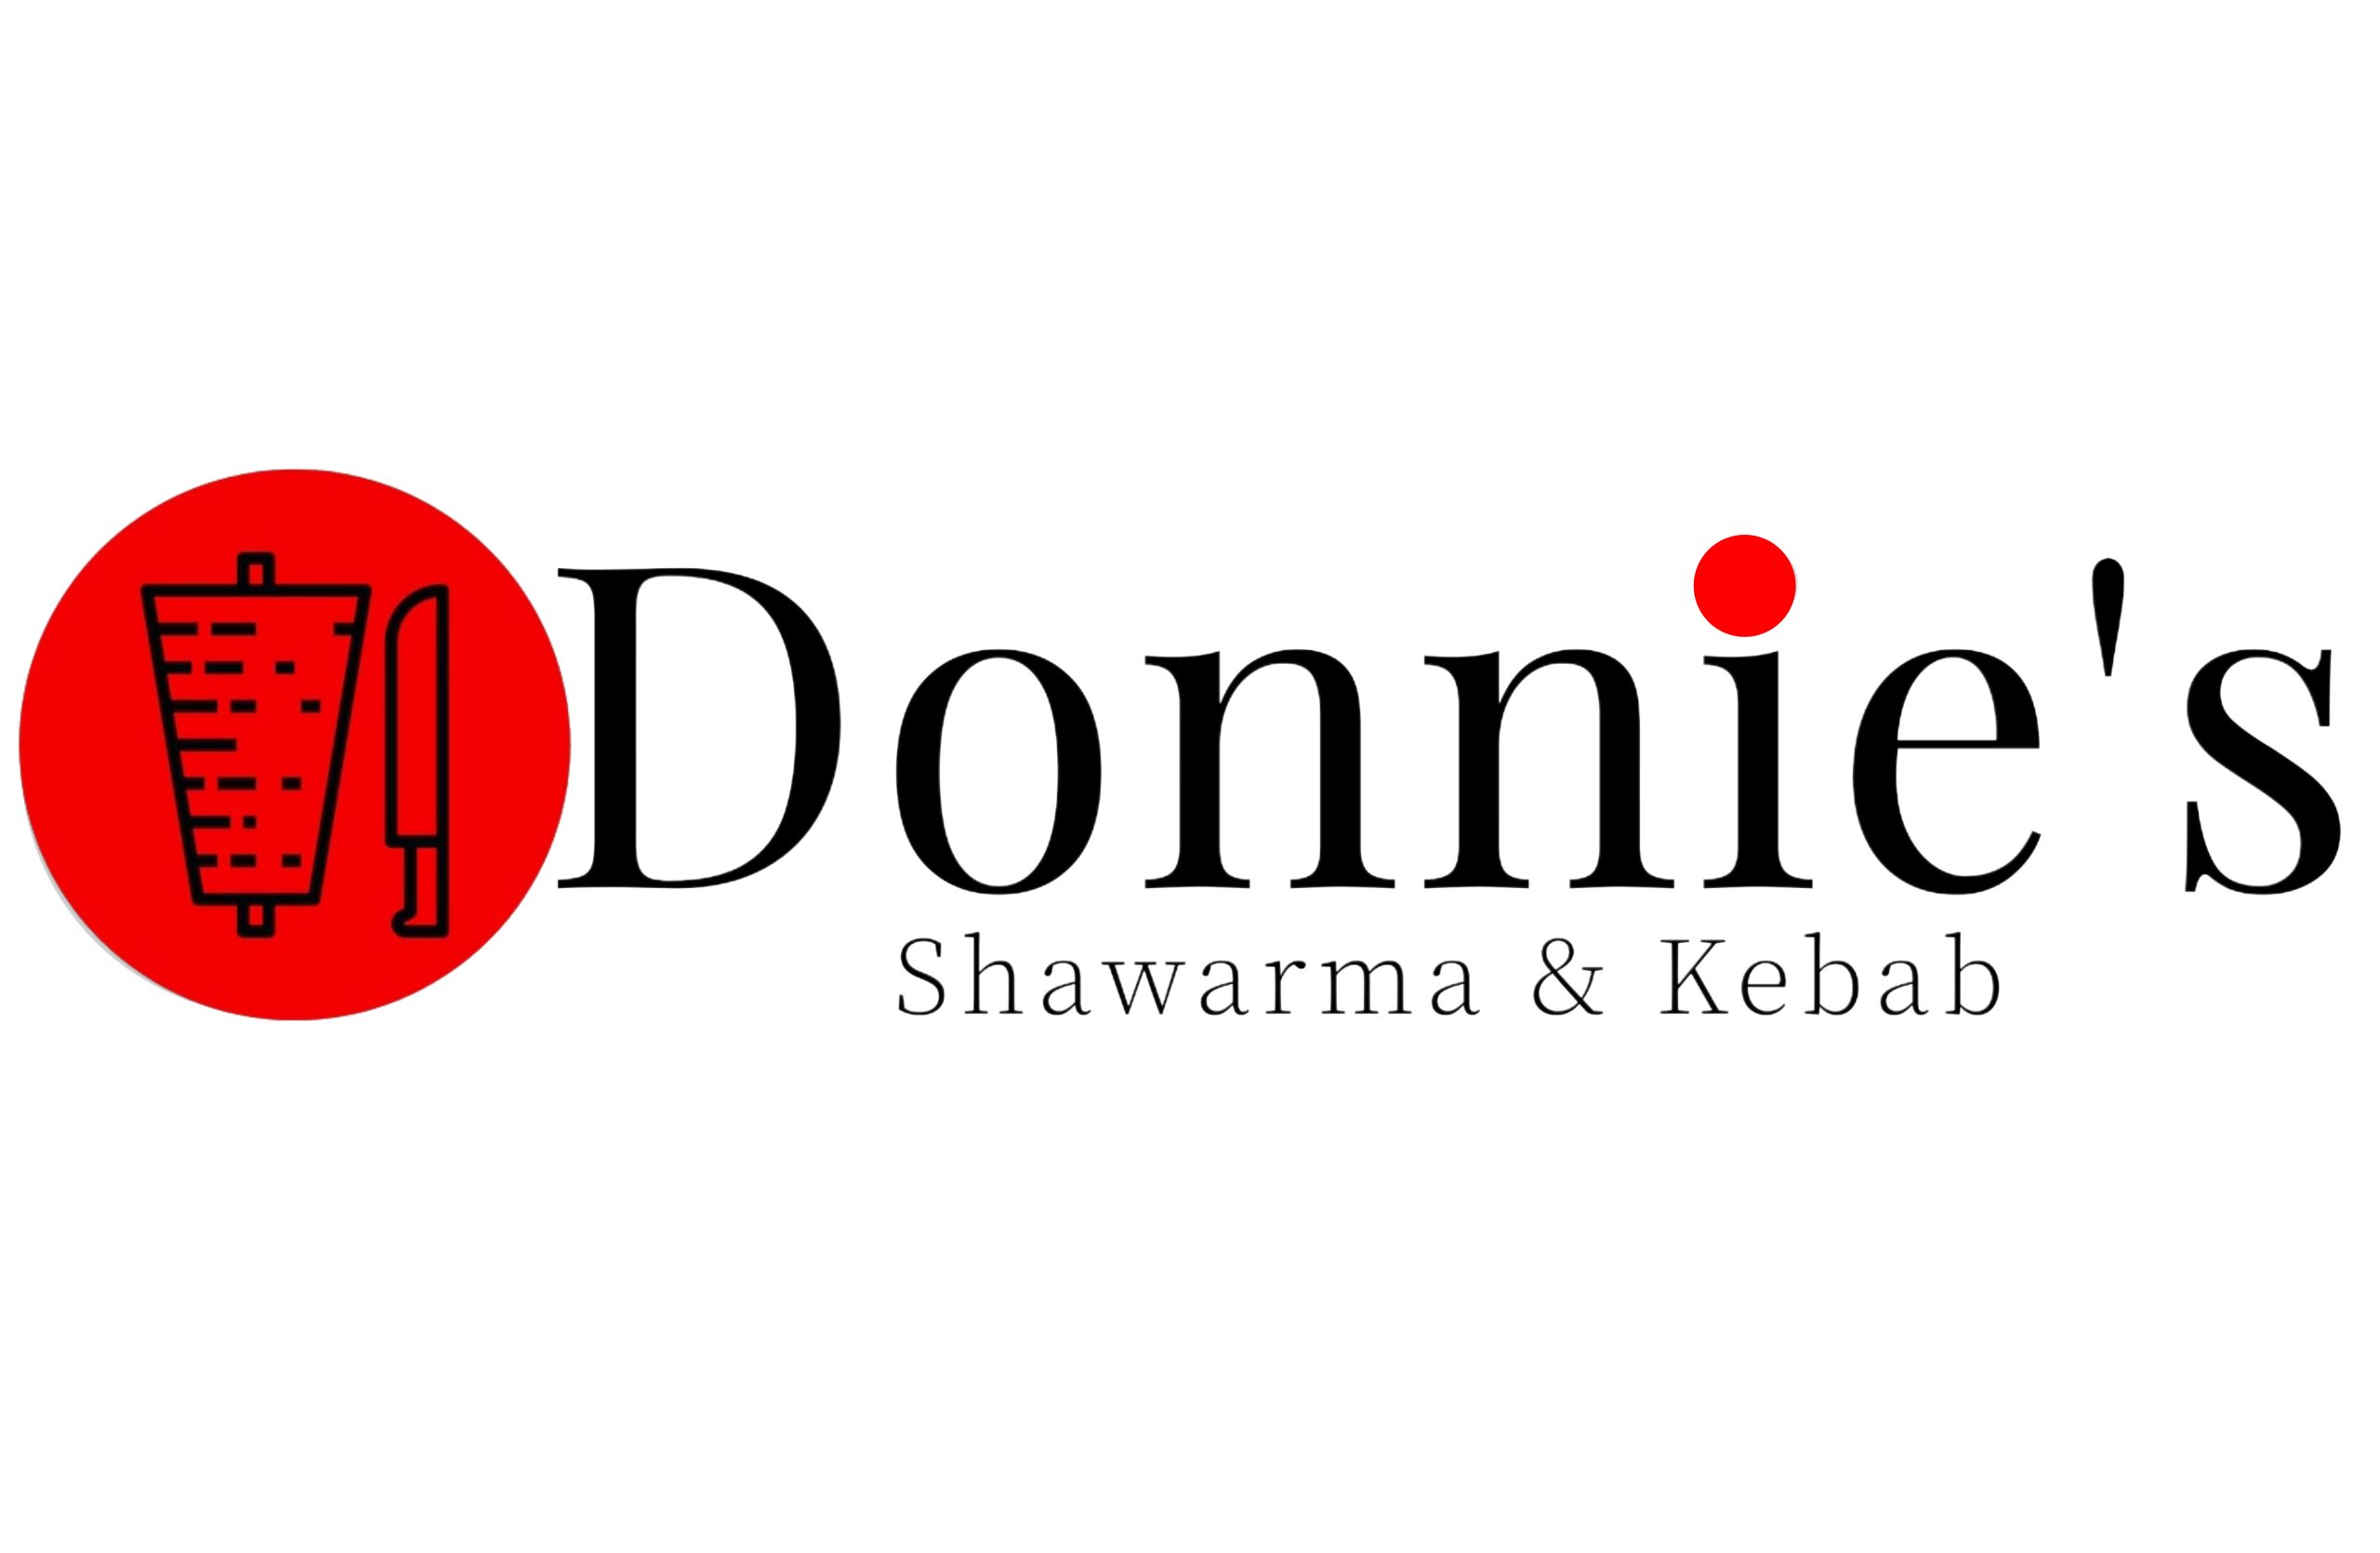 Donnie’s Shawarma & Kebab